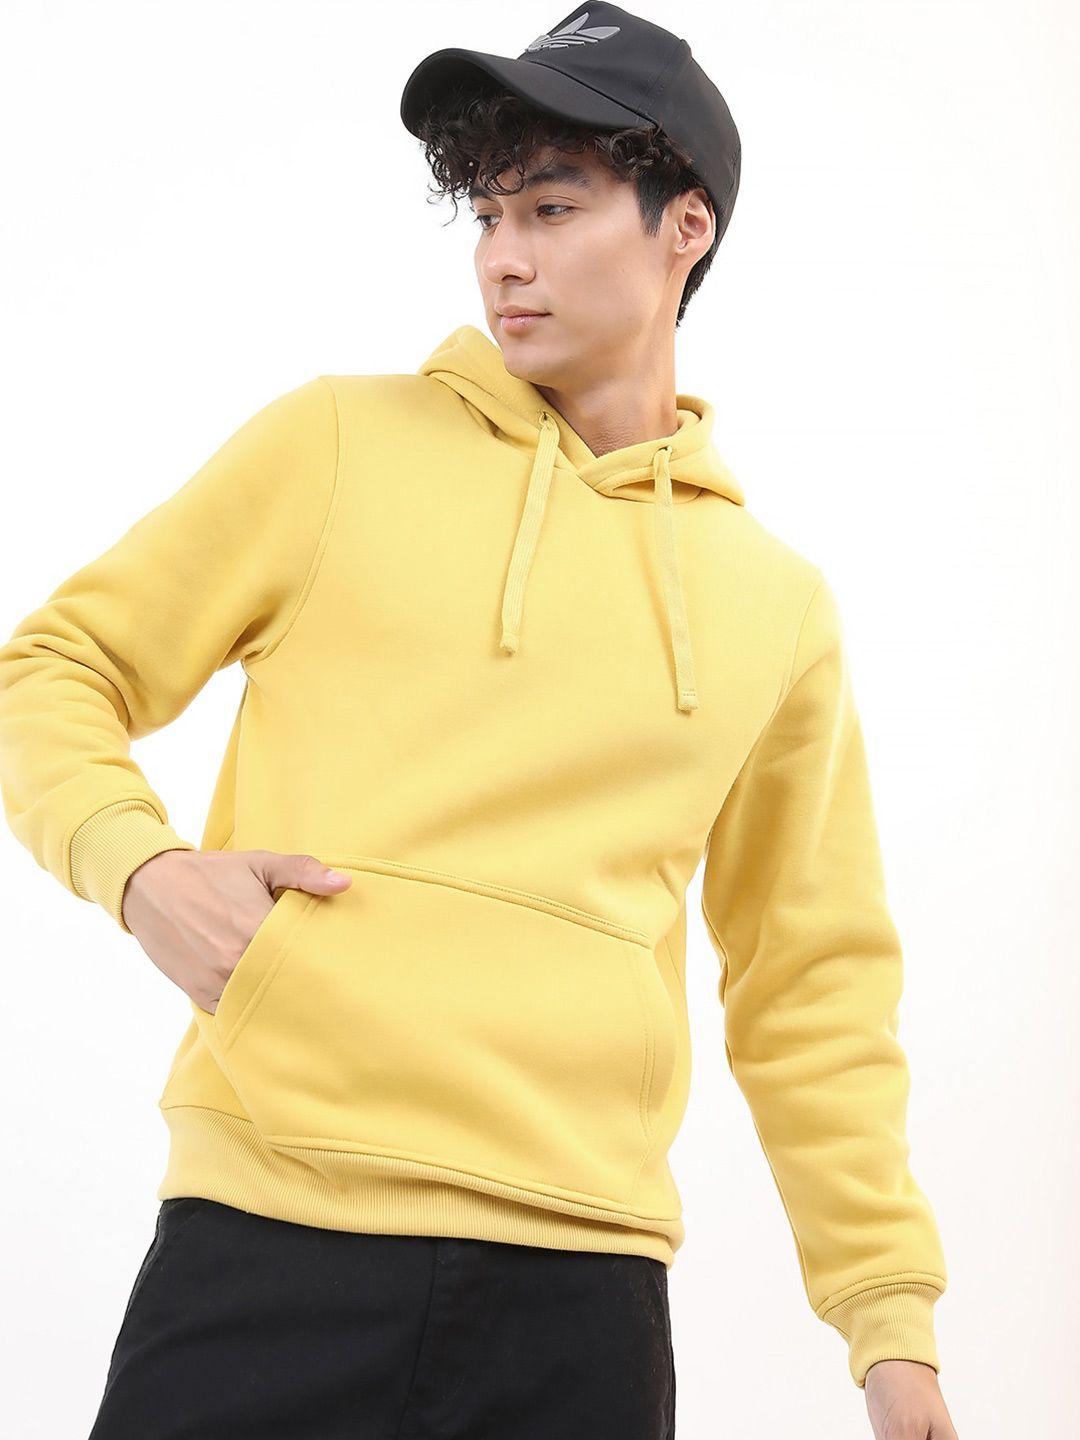 KETCH Yellow Hooded Sweatshirt